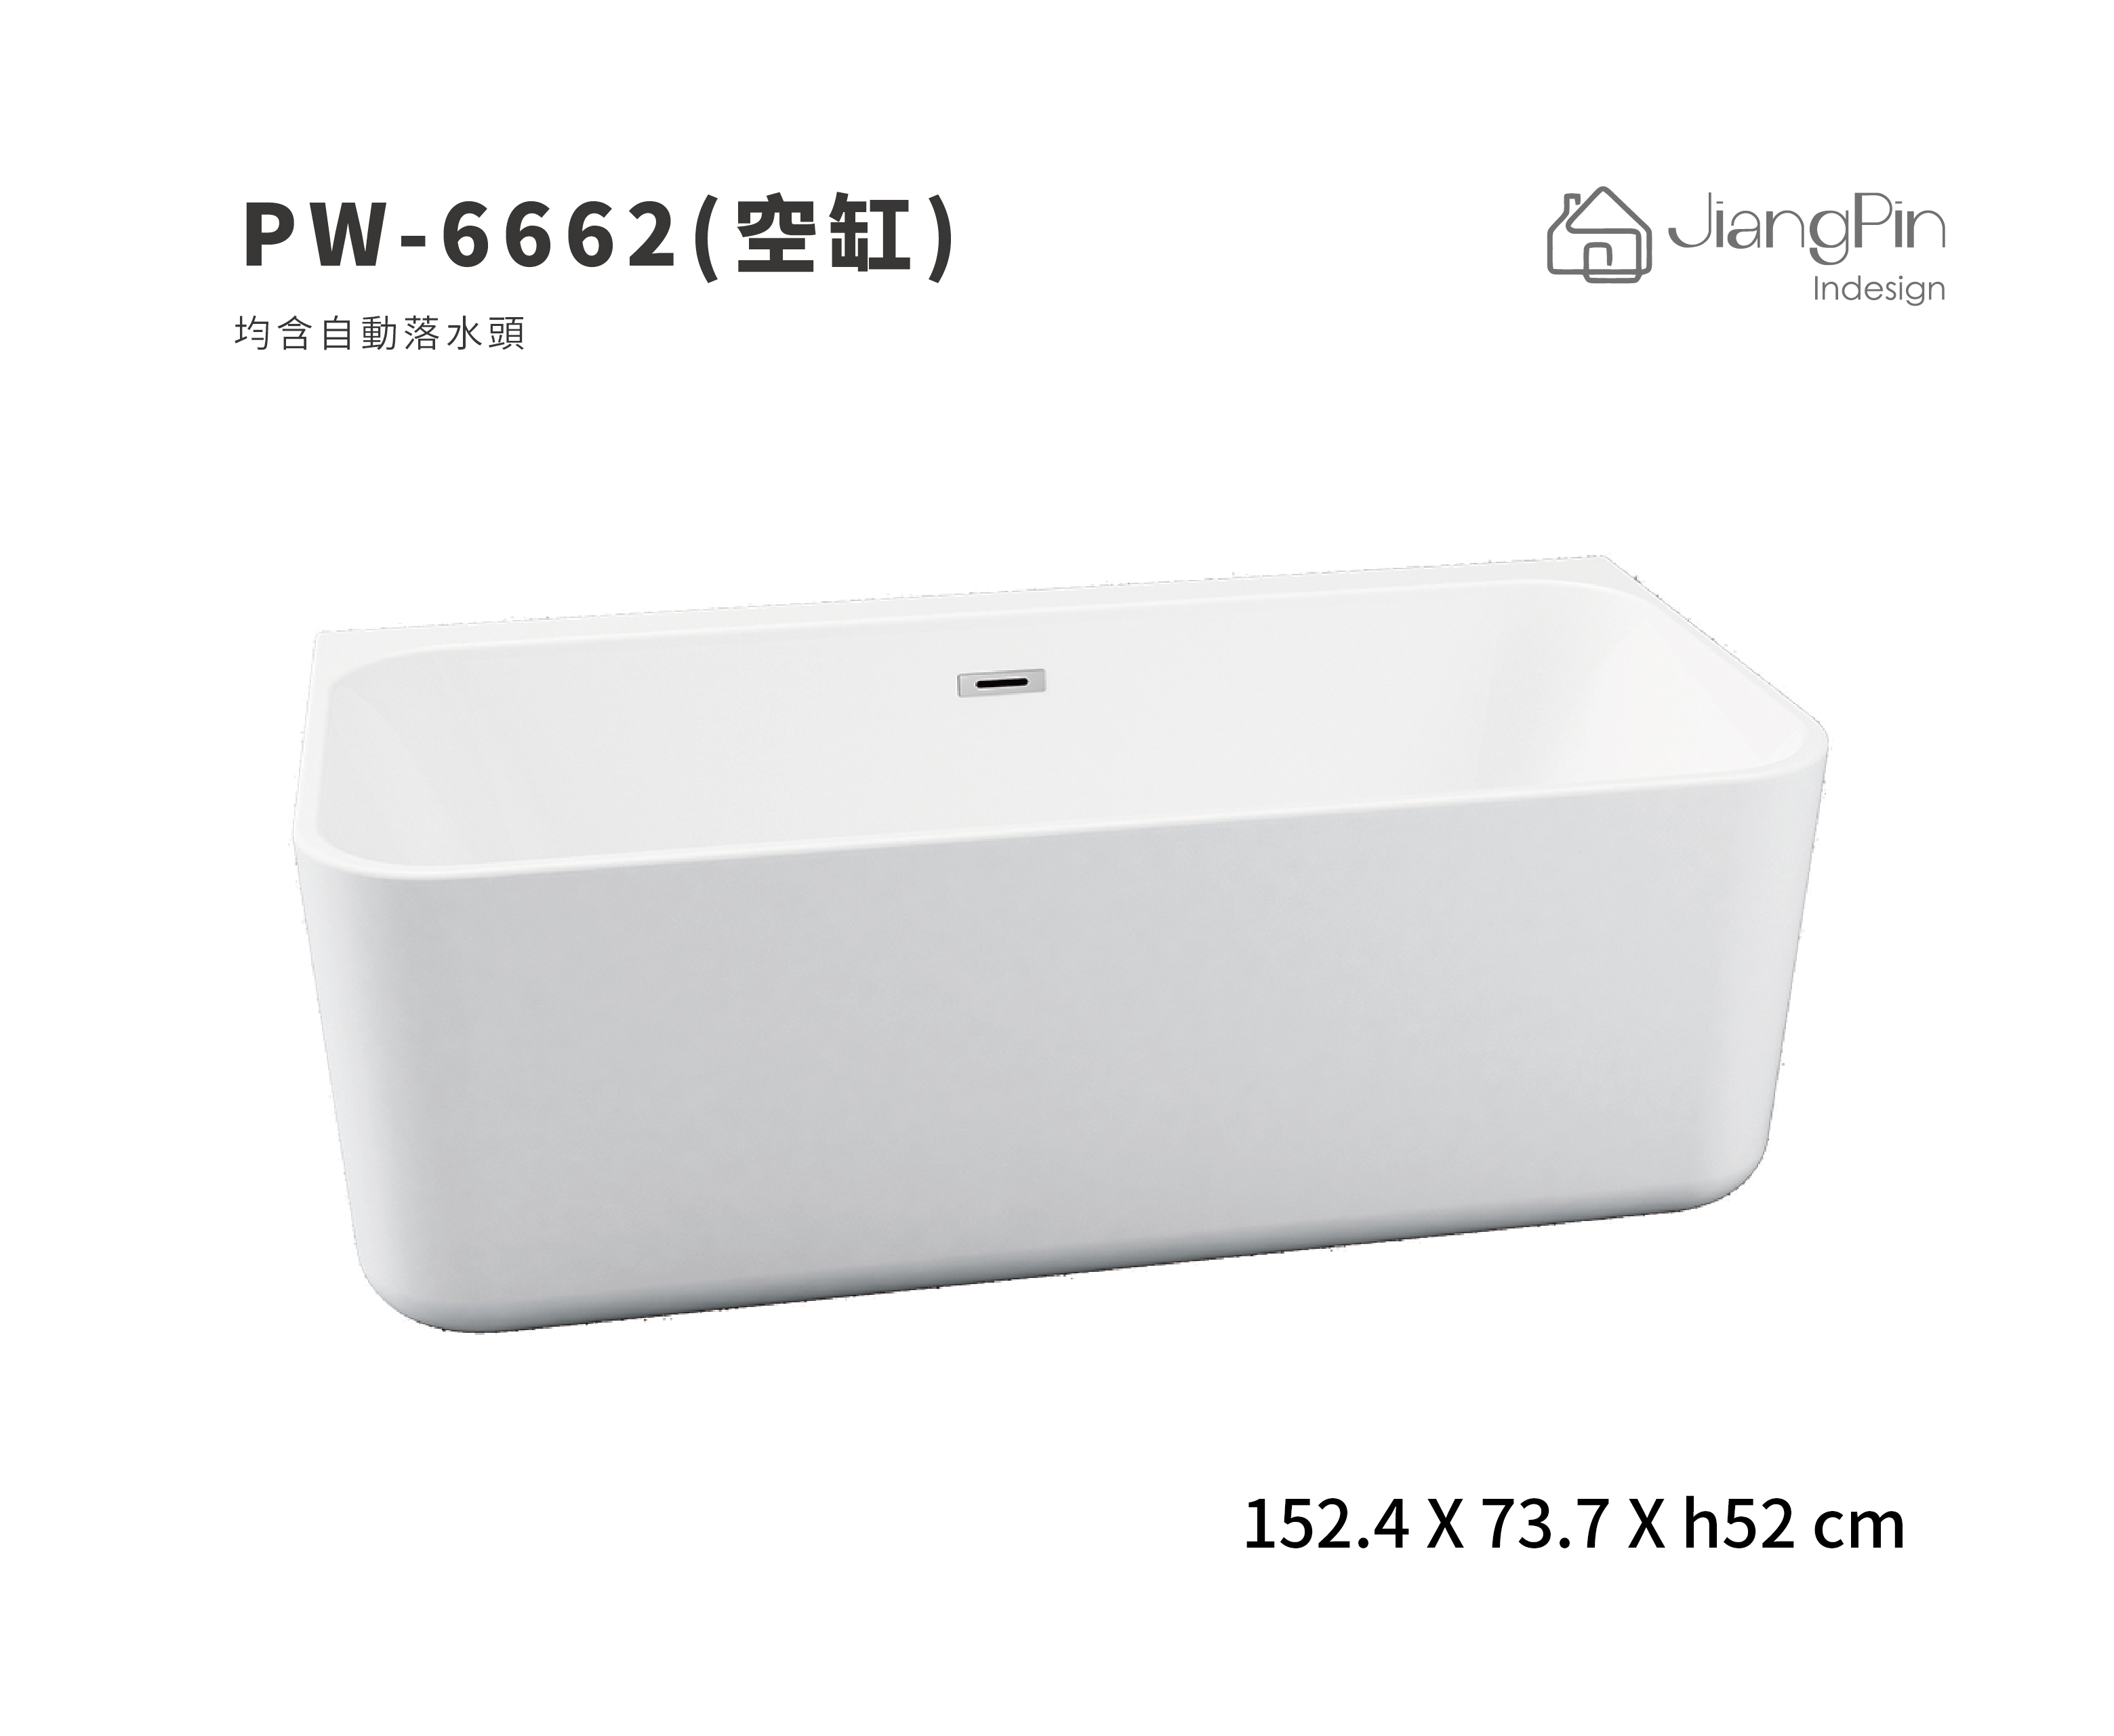 PW-6662(空缸) 壓克力浴缸 152.4cm